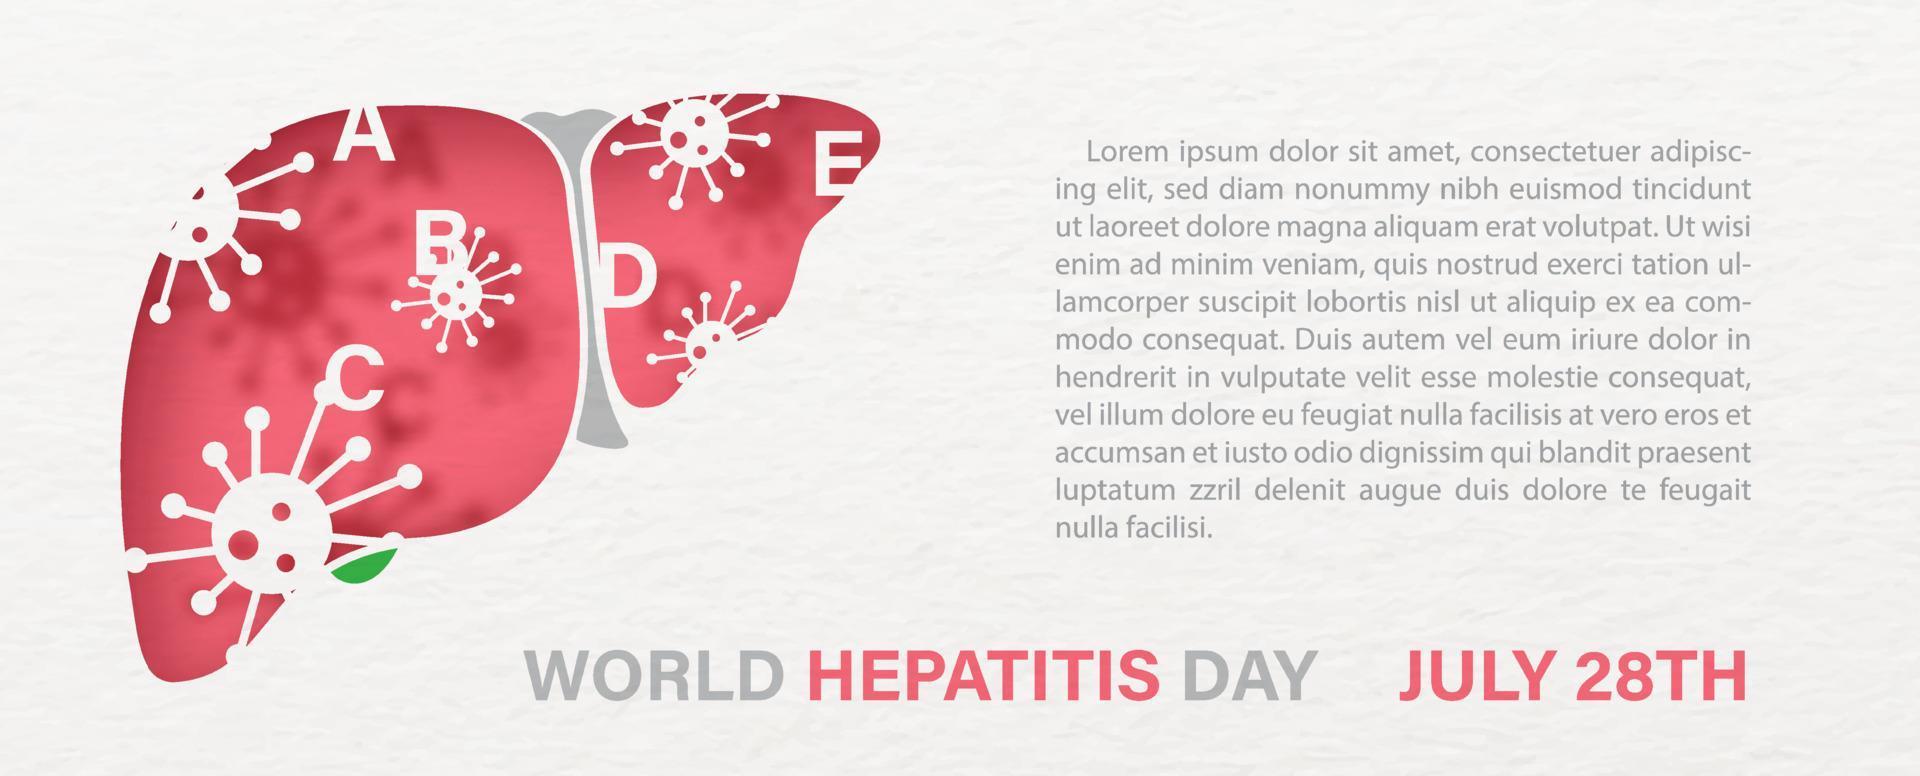 hepatitis-virus auf der menschlichen leber und wortlaut des welthepatitistages, beispieltexte auf weißem papiermusterhintergrund. posterkampagne im papierschnittstil und bannervektordesign. vektor